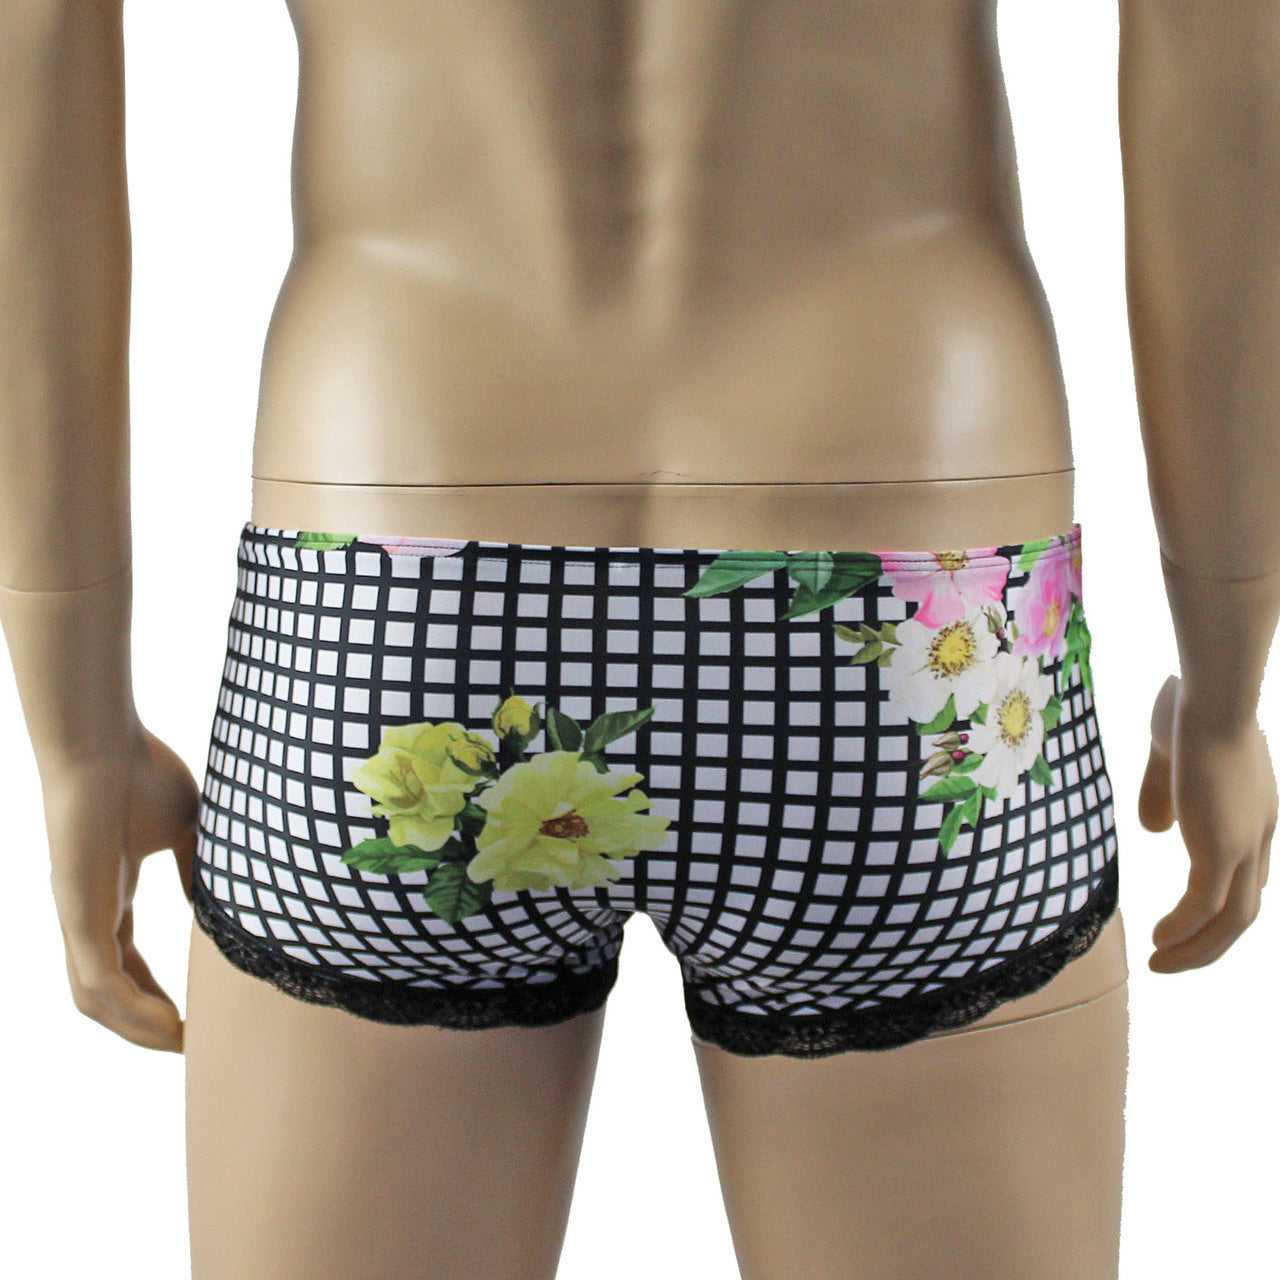 Mens Diana Bikini Boxer Briefs in a Flower, Checkered Print Spandex